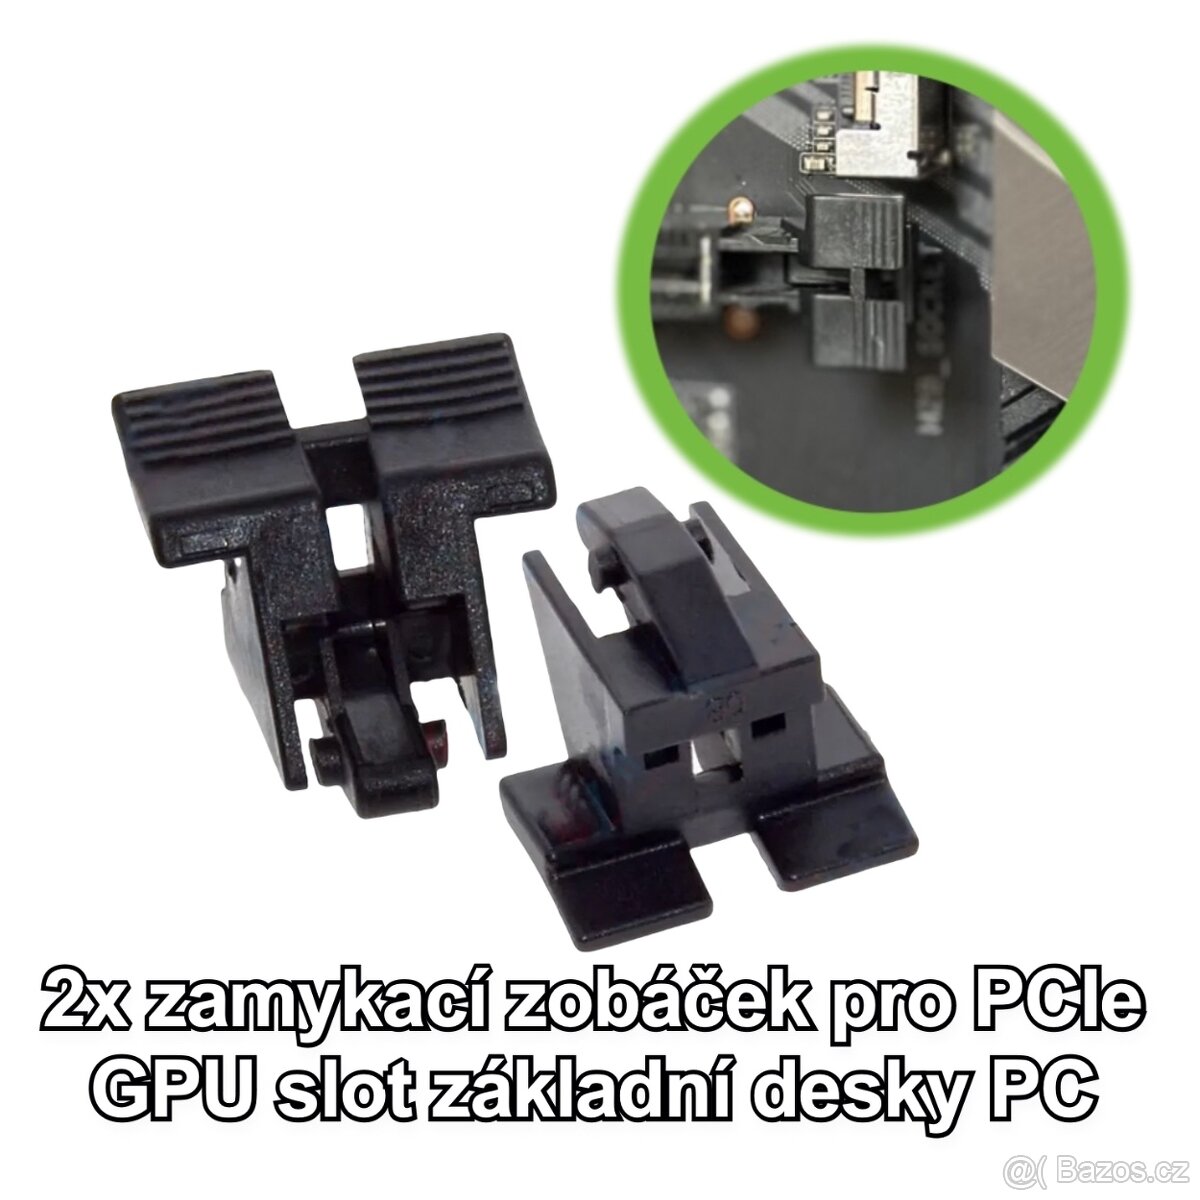 zamykací zobáček pro PCIe GPU slot základní desky PC